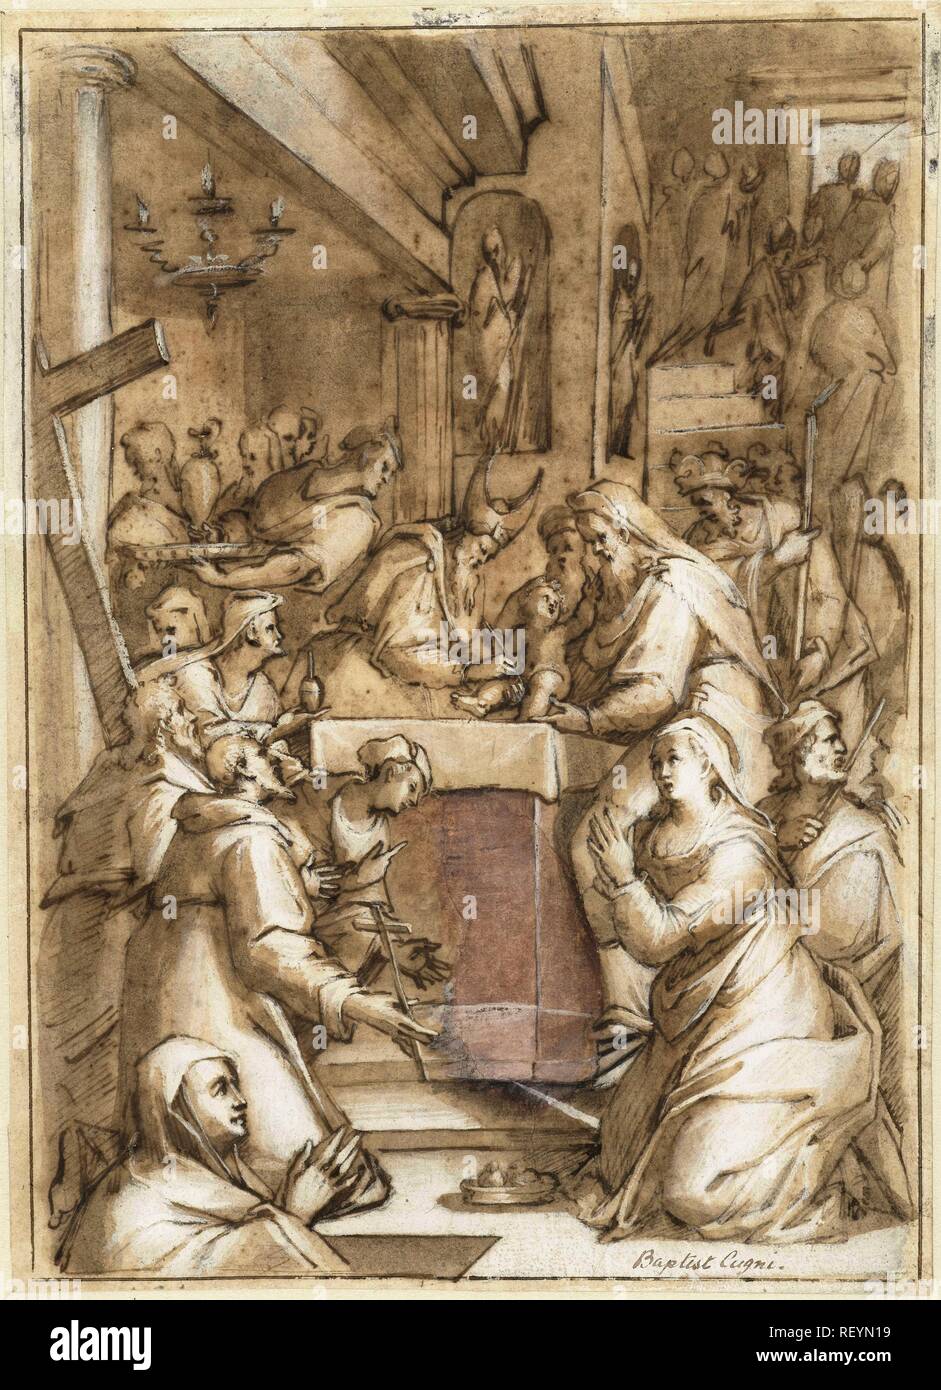 Die Beschneidung. Verfasser der Stellungnahme: Giovanni Battista Cungi. Datierung: 1500 - 1569. Maße: H 243 mm x B 176 mm. Museum: Rijksmuseum, Amsterdam. Stockfoto